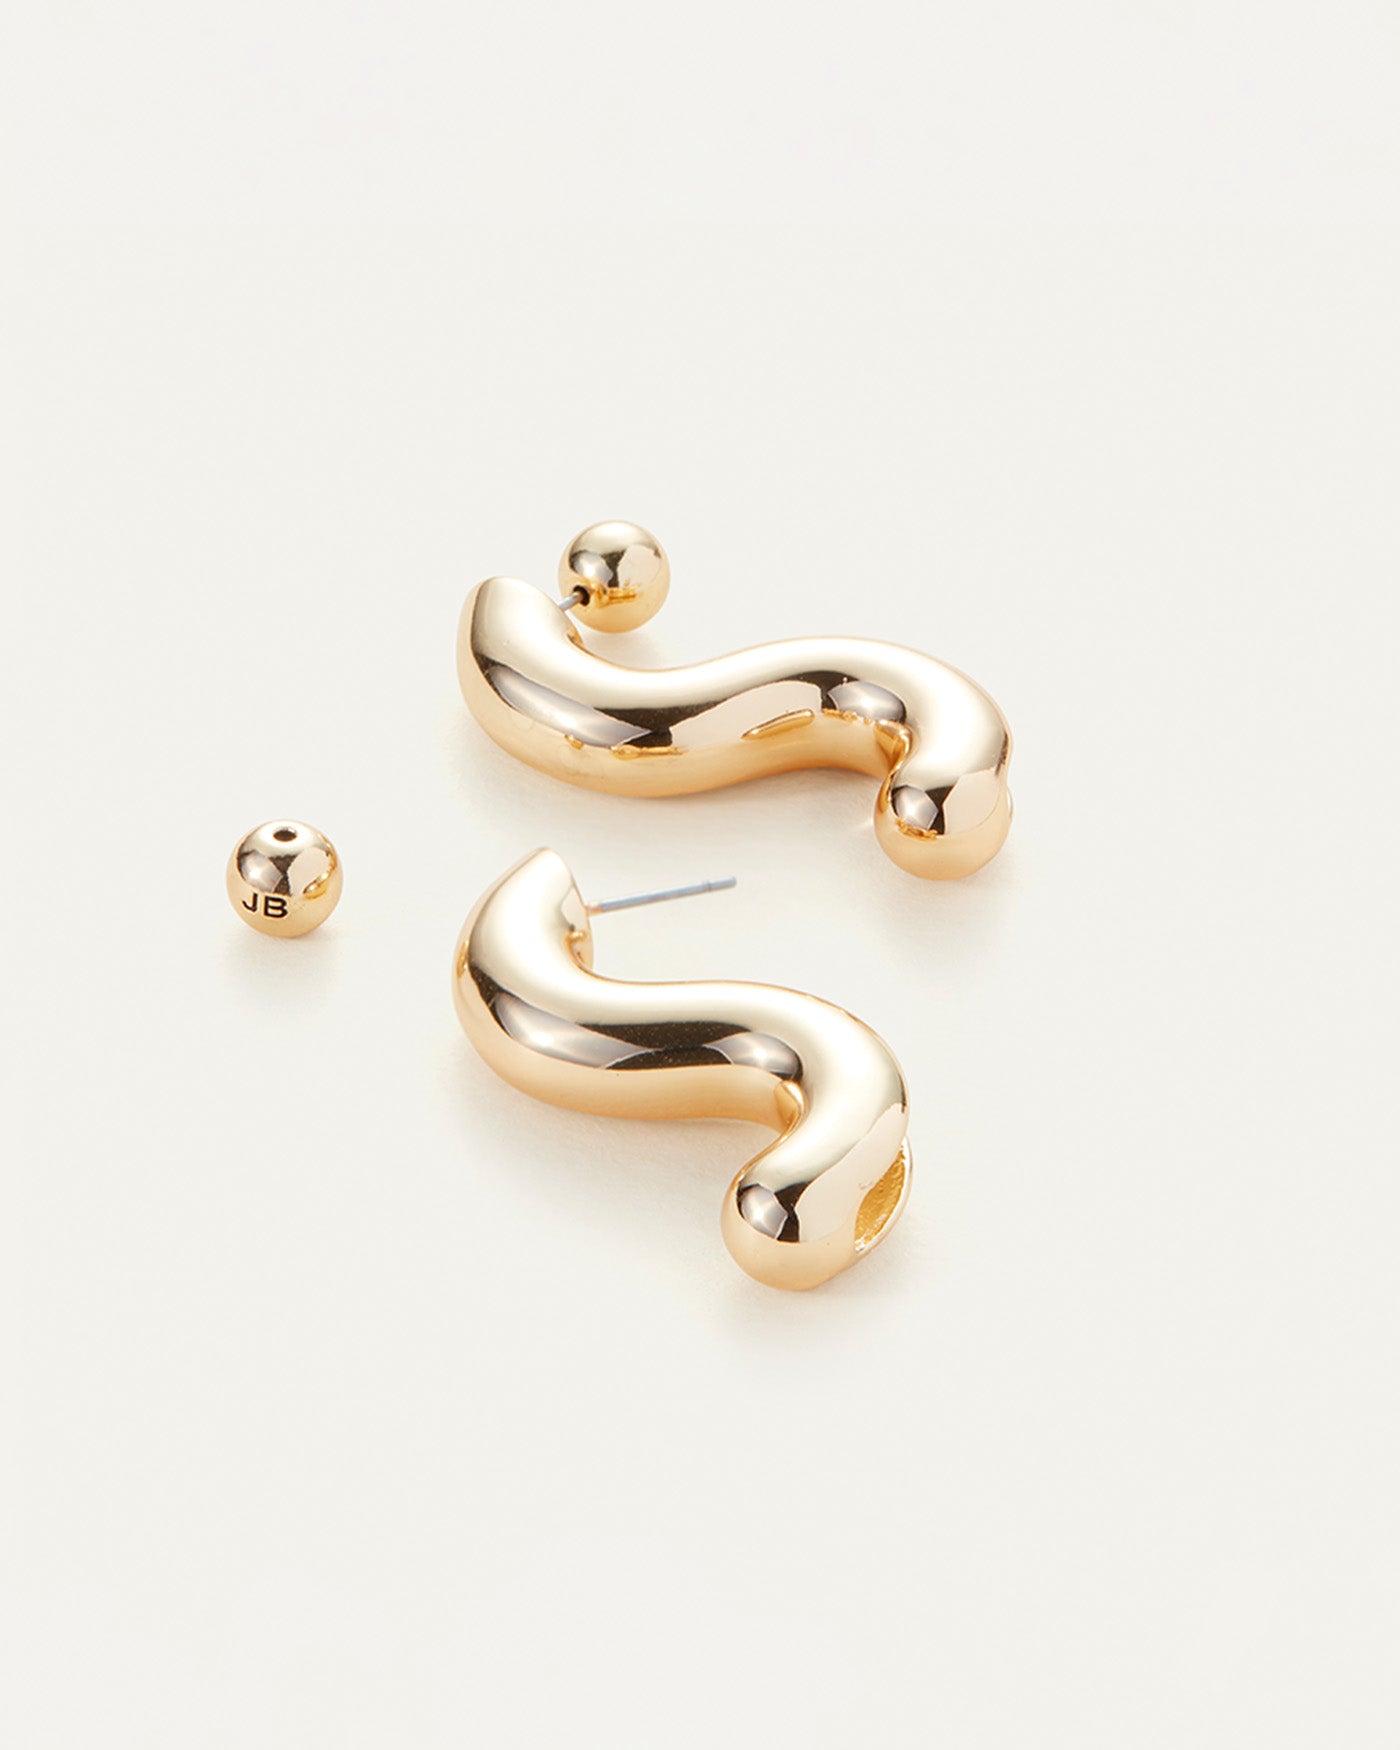 Gold Letter V Earrings Stud, Designer Gold V Earrings